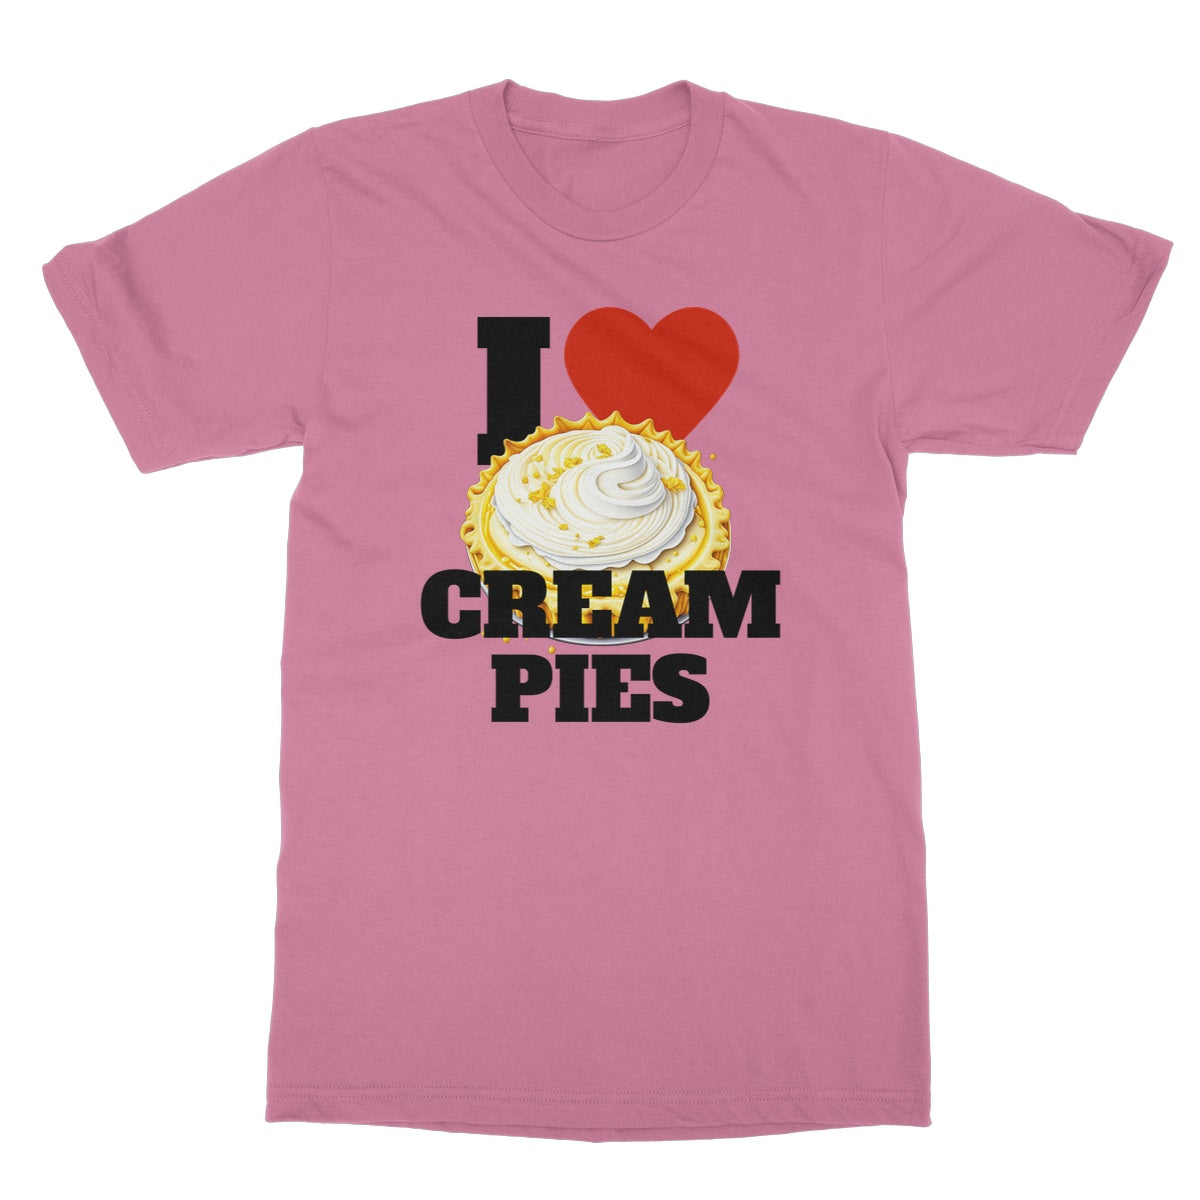 I love cream pies t shirt pink